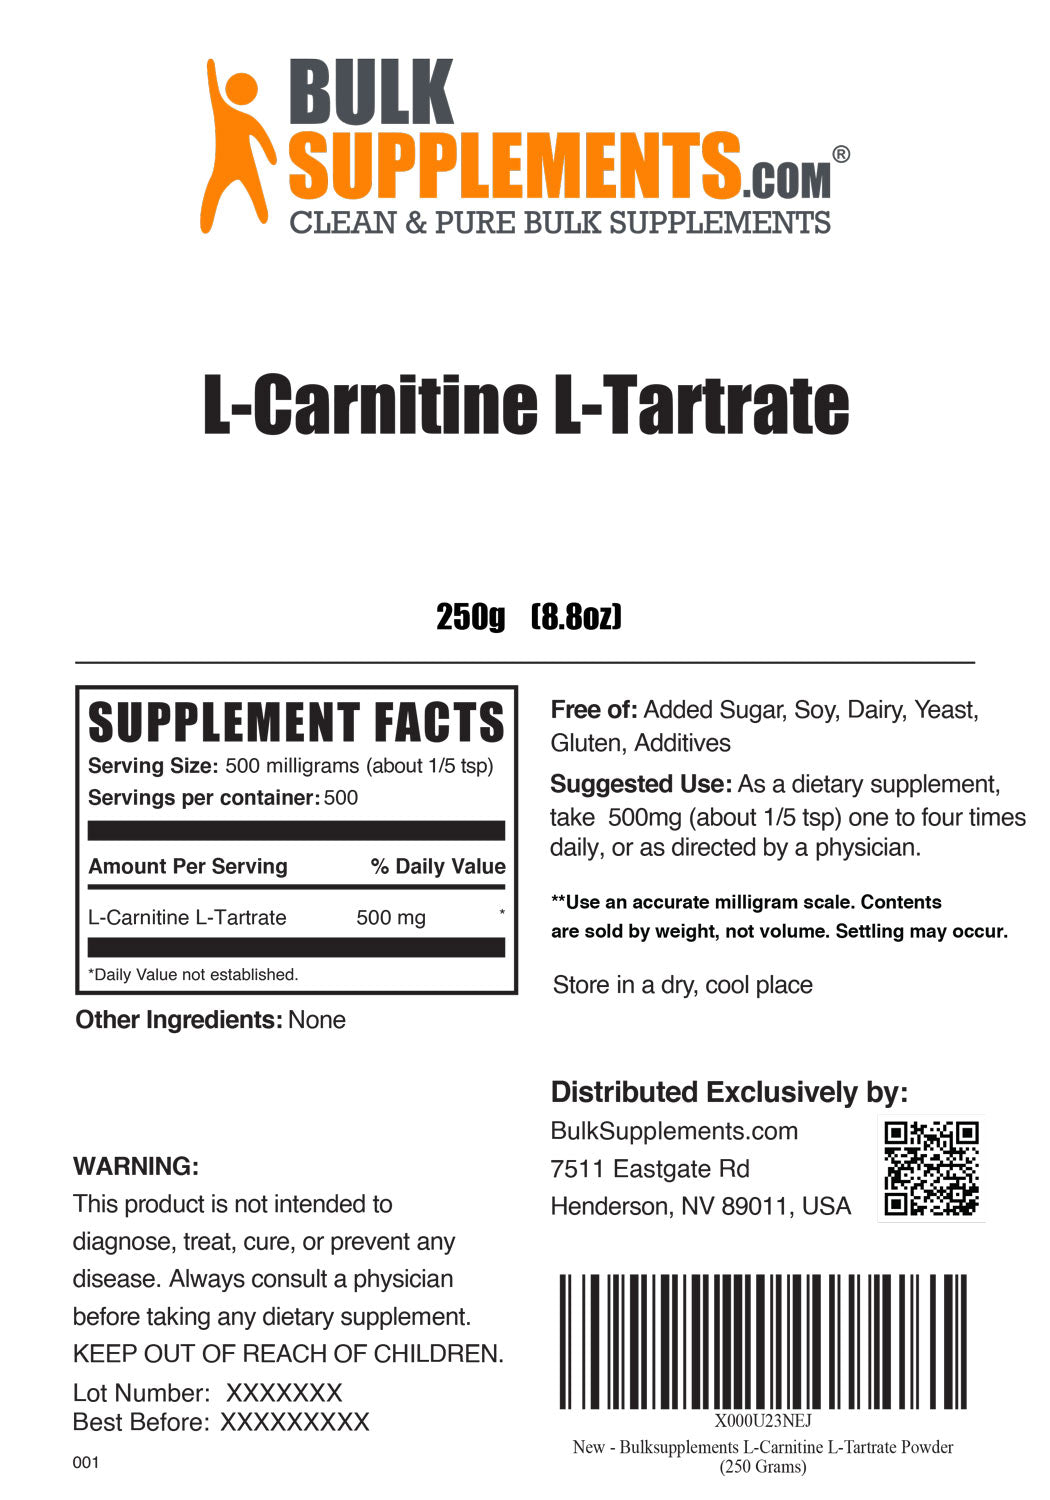 L-carnitine l-tartrate LCLT powder label 250g